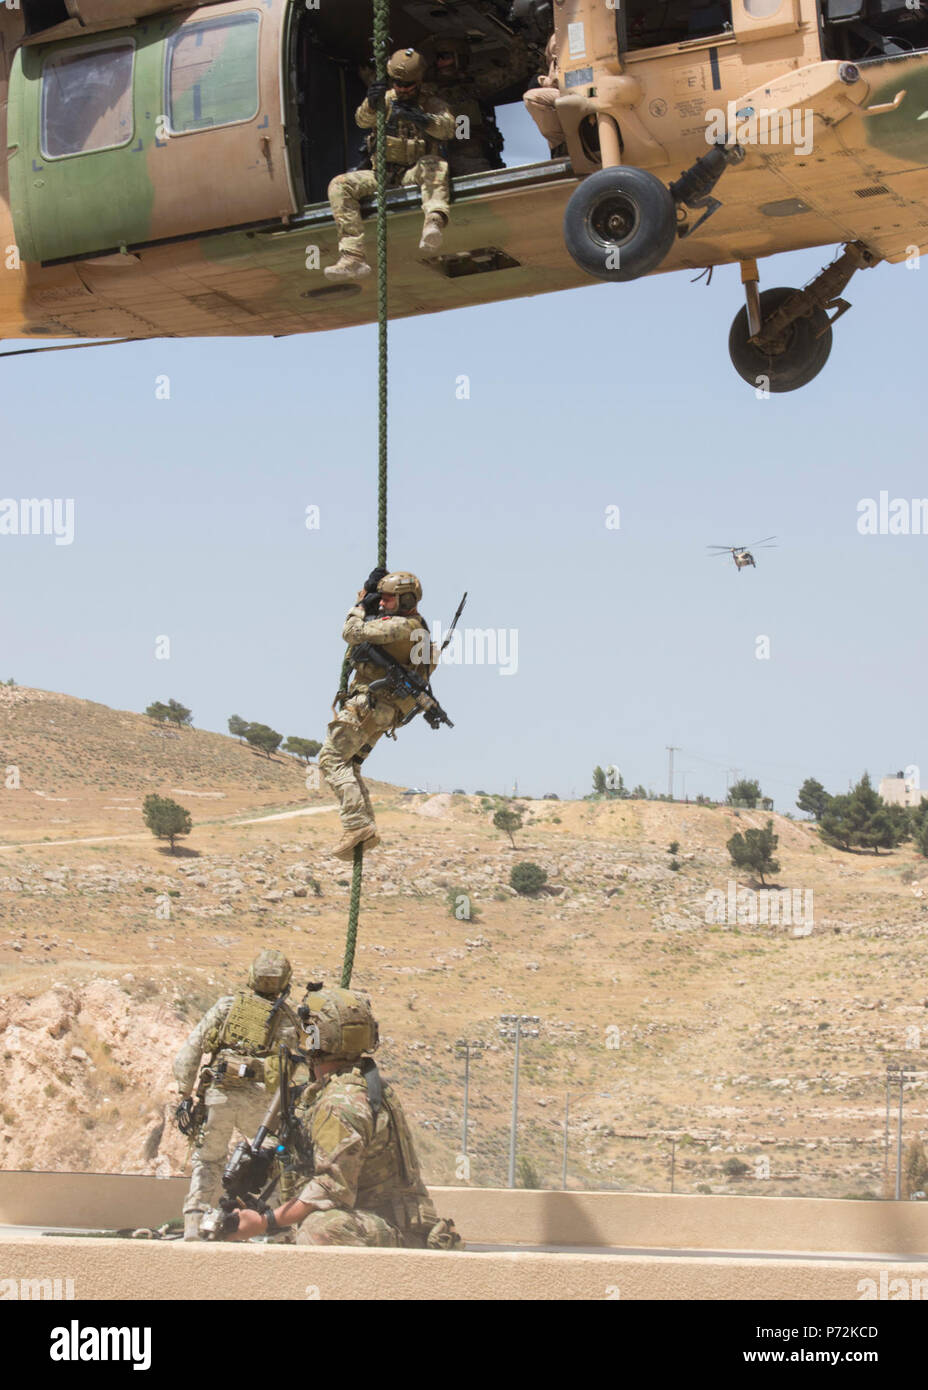 AMMAN, JORDANIE (11 mai 2017) Les membres de l'Air Force Special Operations à partir de la 23e Special Tactics Squadron de corde rapide à partir d'un hélicoptère UH-60 jordanienne au cours d'un exercice à l'appui de lion avide de 2017. Lion avide est un exercice annuel le Commandement central américain en Jordanie visant à renforcer les relations militaires entre les Etats-Unis, la Jordanie et d'autres partenaires internationaux. La nouvelle édition se compose d'environ 7 200 militaires provenant de plus de 20 nations qui permettra de répondre aux scénarios impliquant la sécurité des frontières, de commandement et de contrôle, de la cyberdéfense et de bataille mome Banque D'Images